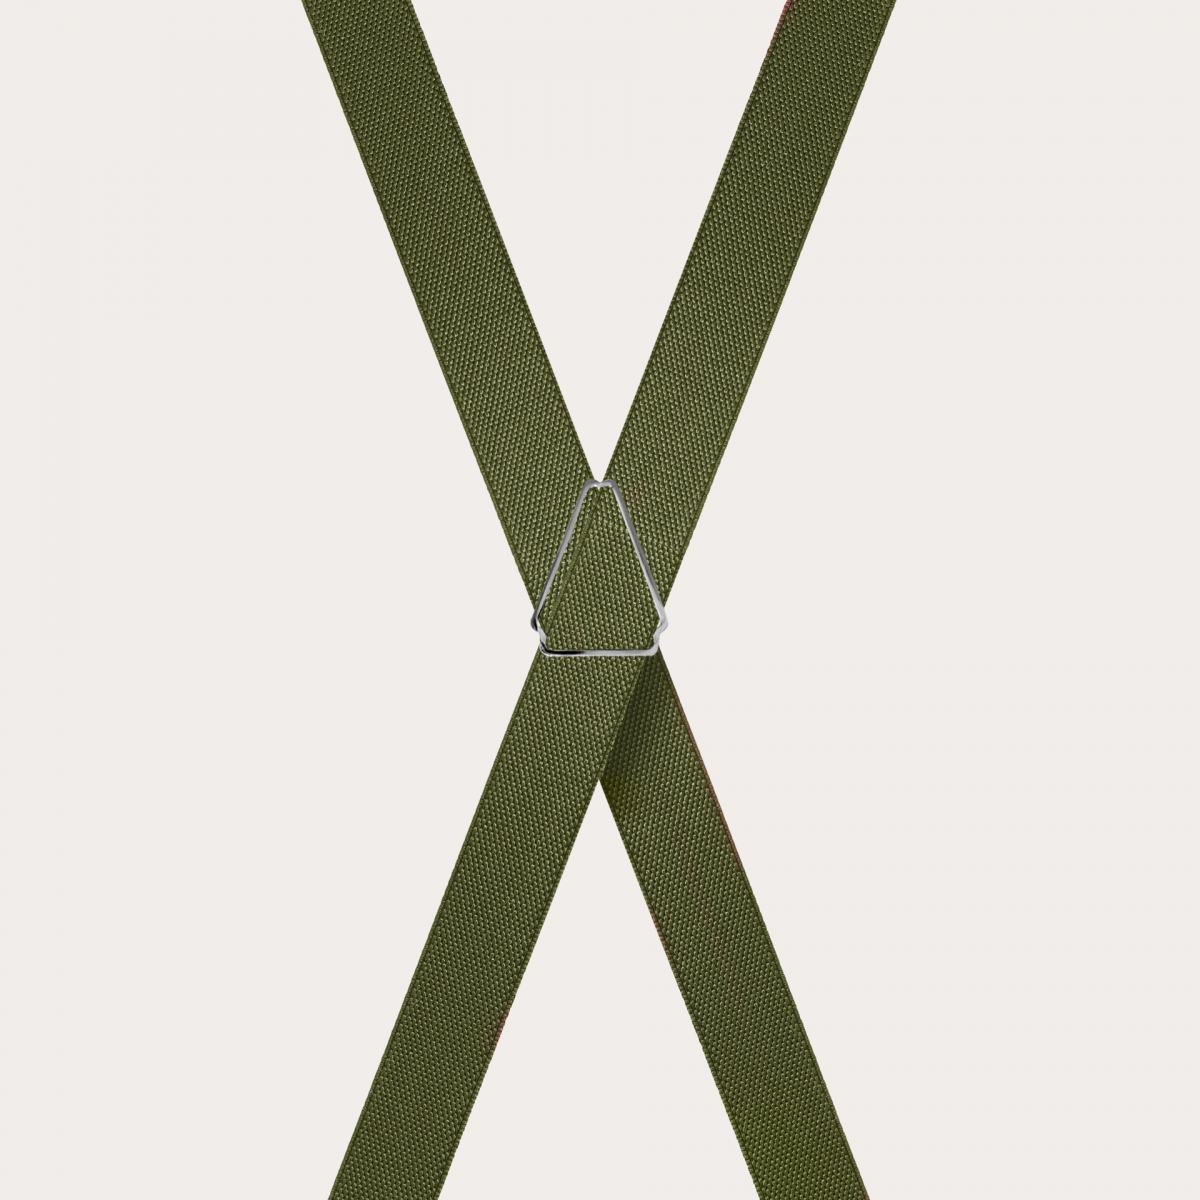 BRUCLE Tirantes unisex en forma de X para niños y adolescentes, verde militar